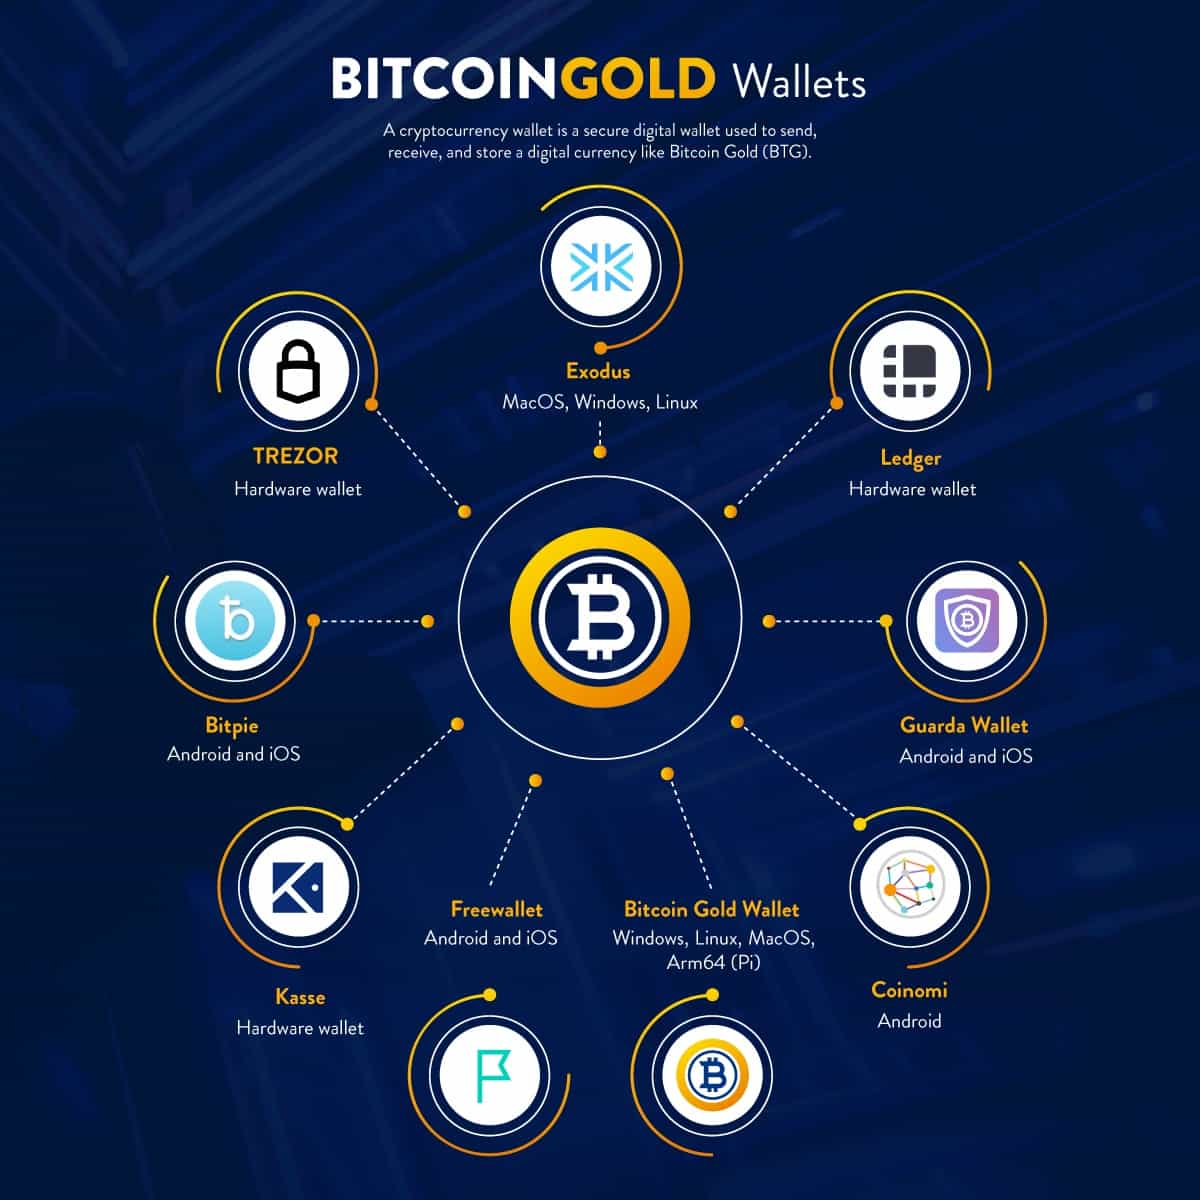 Bitcoin Gold wallets